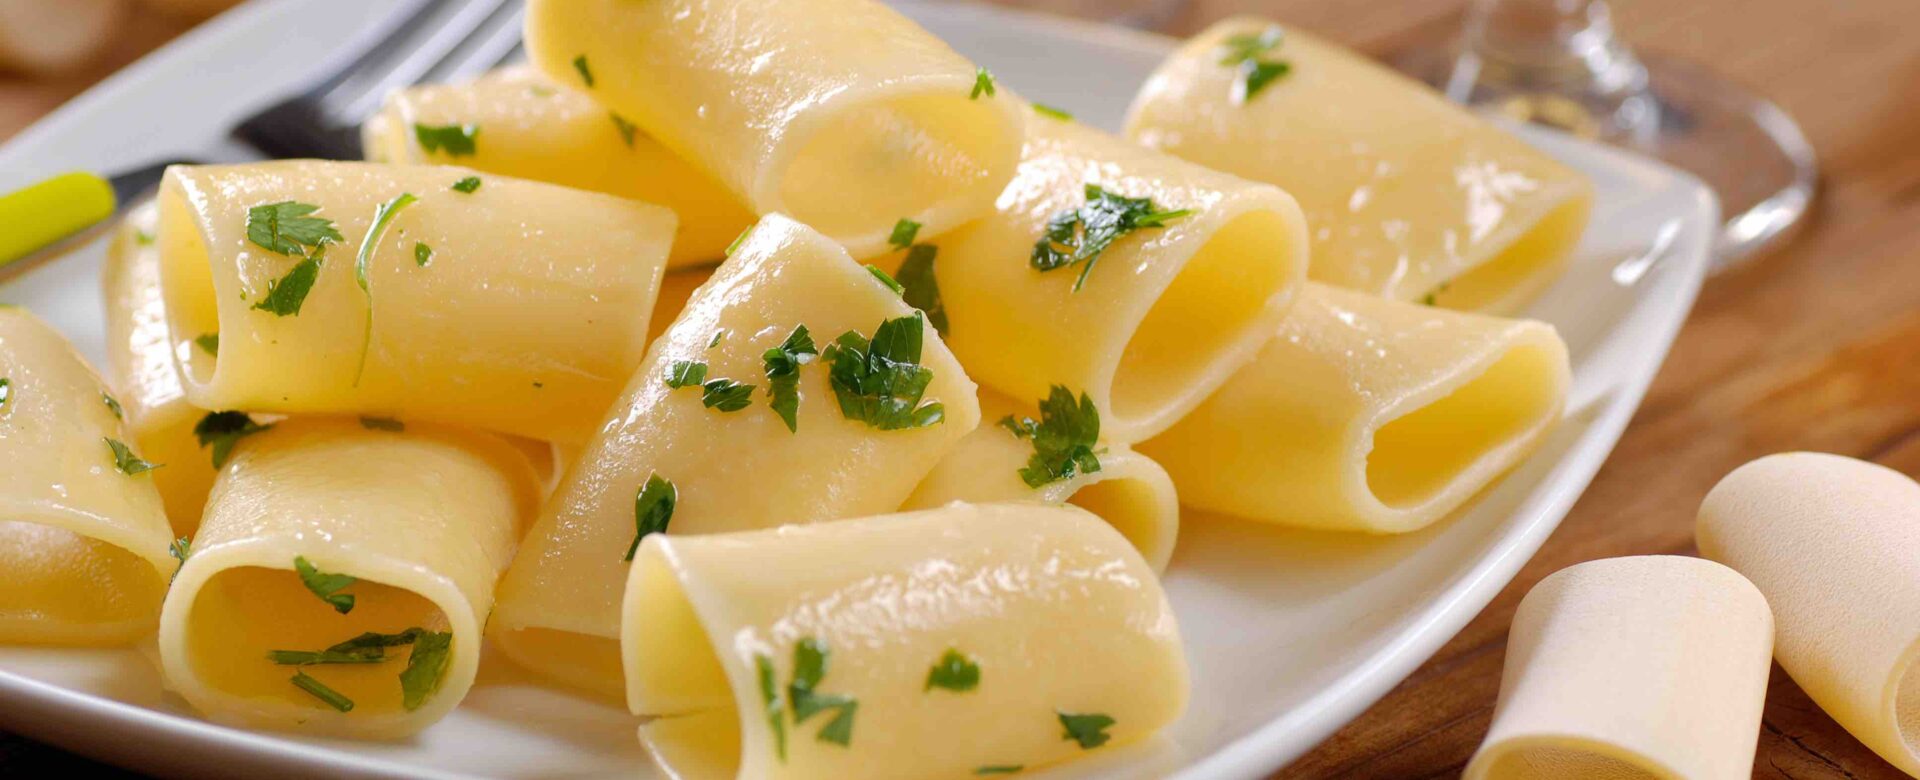 Paccheri, een heerlijke pastasoort